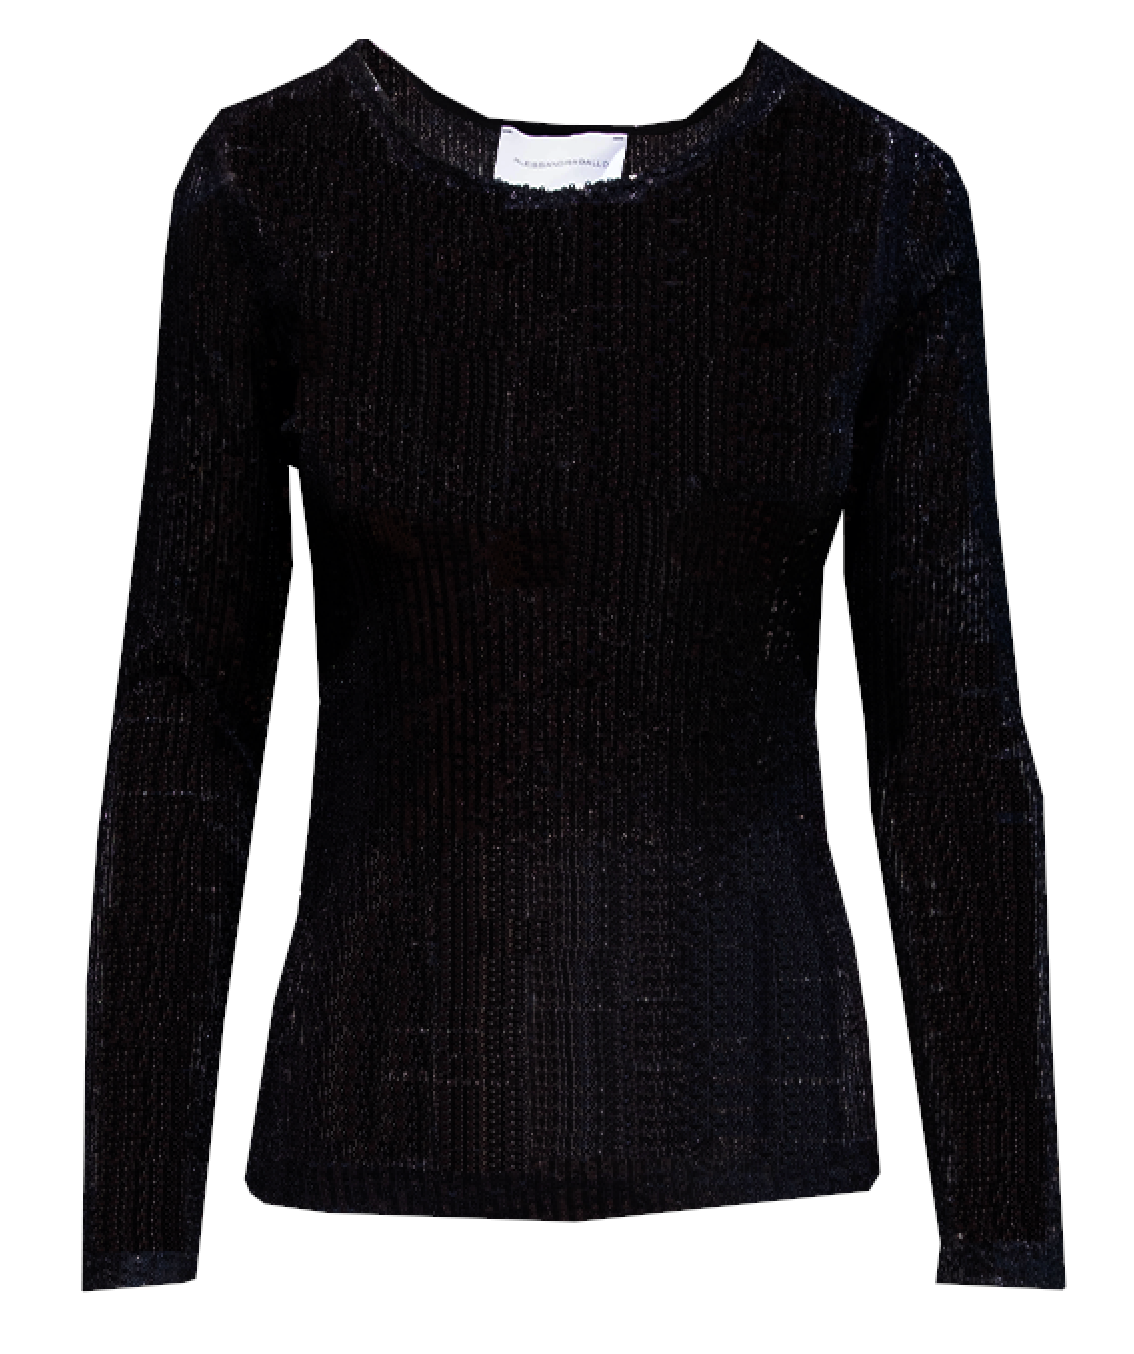 VIOLET - black sequin sweater